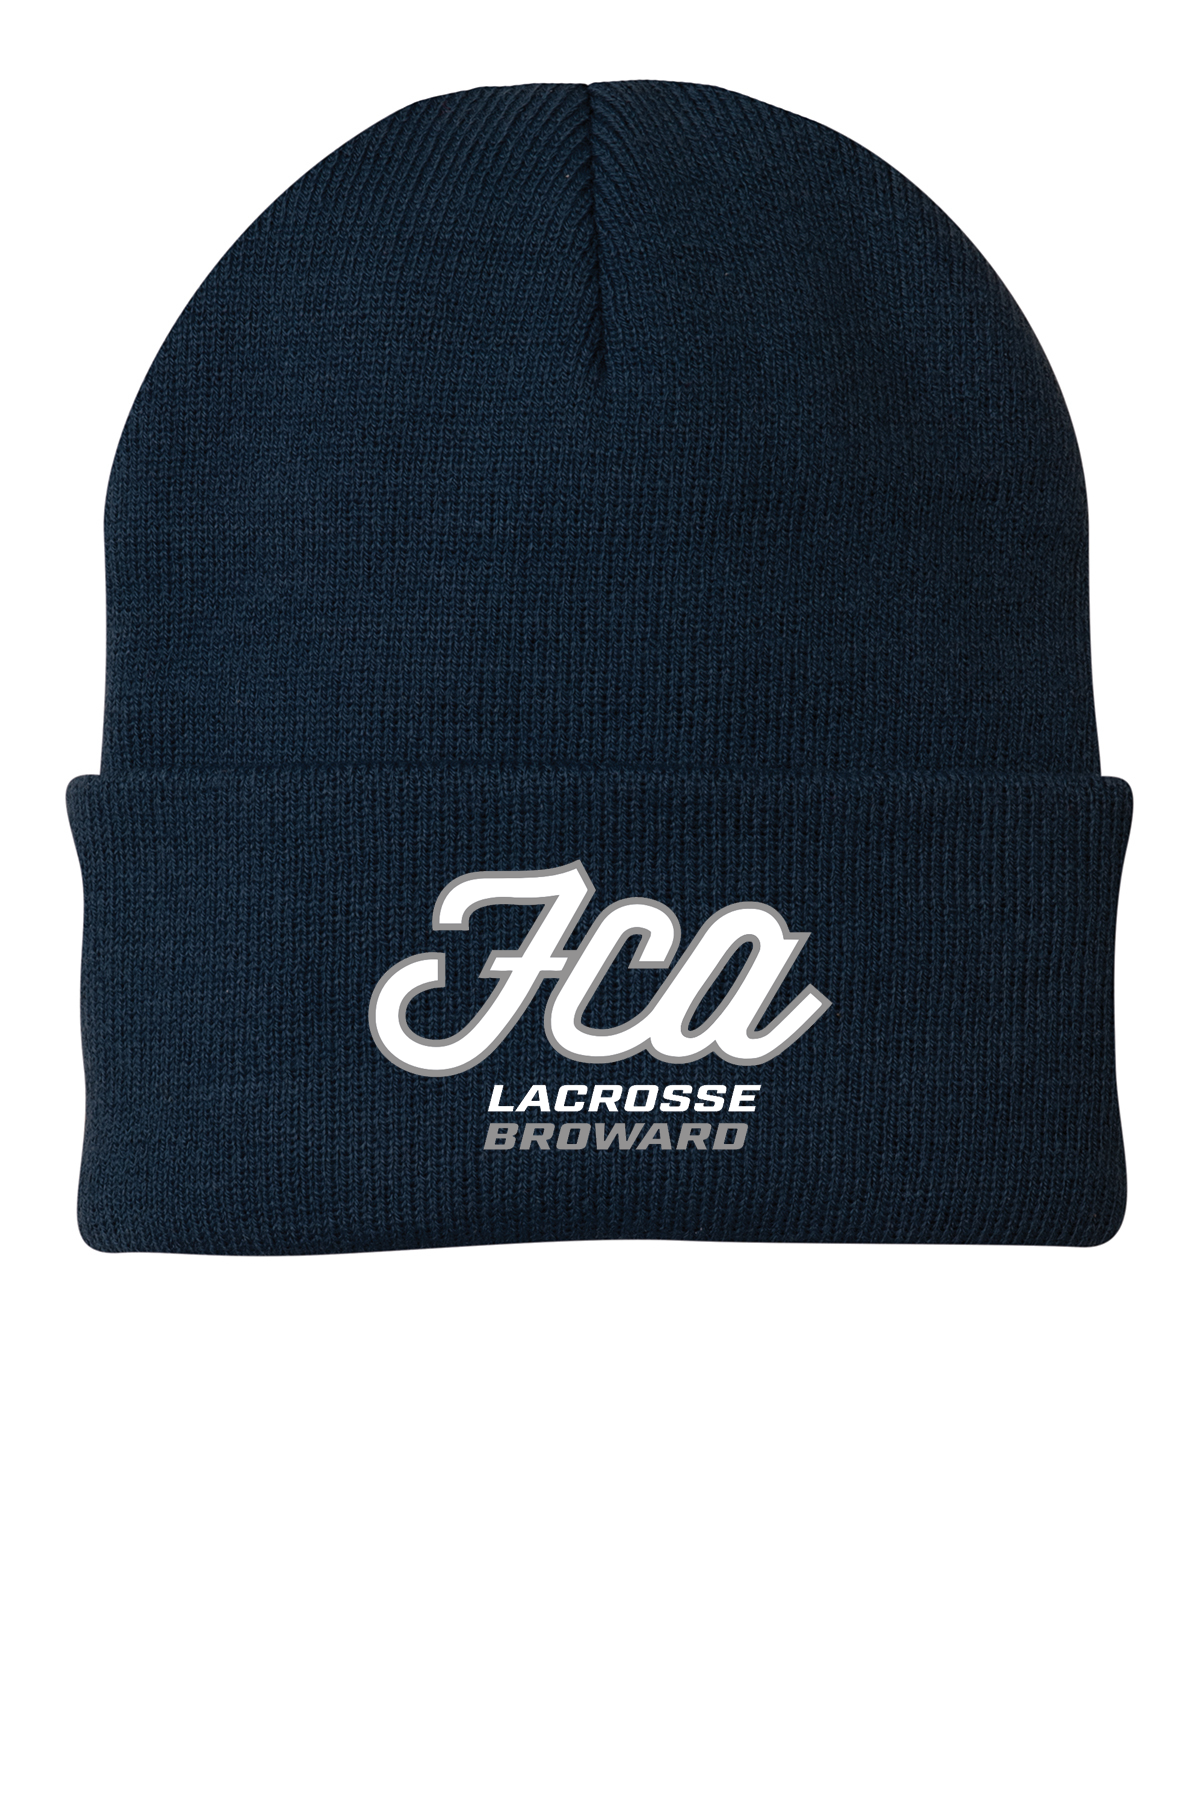 FCA Lacrosse Knit Beanie